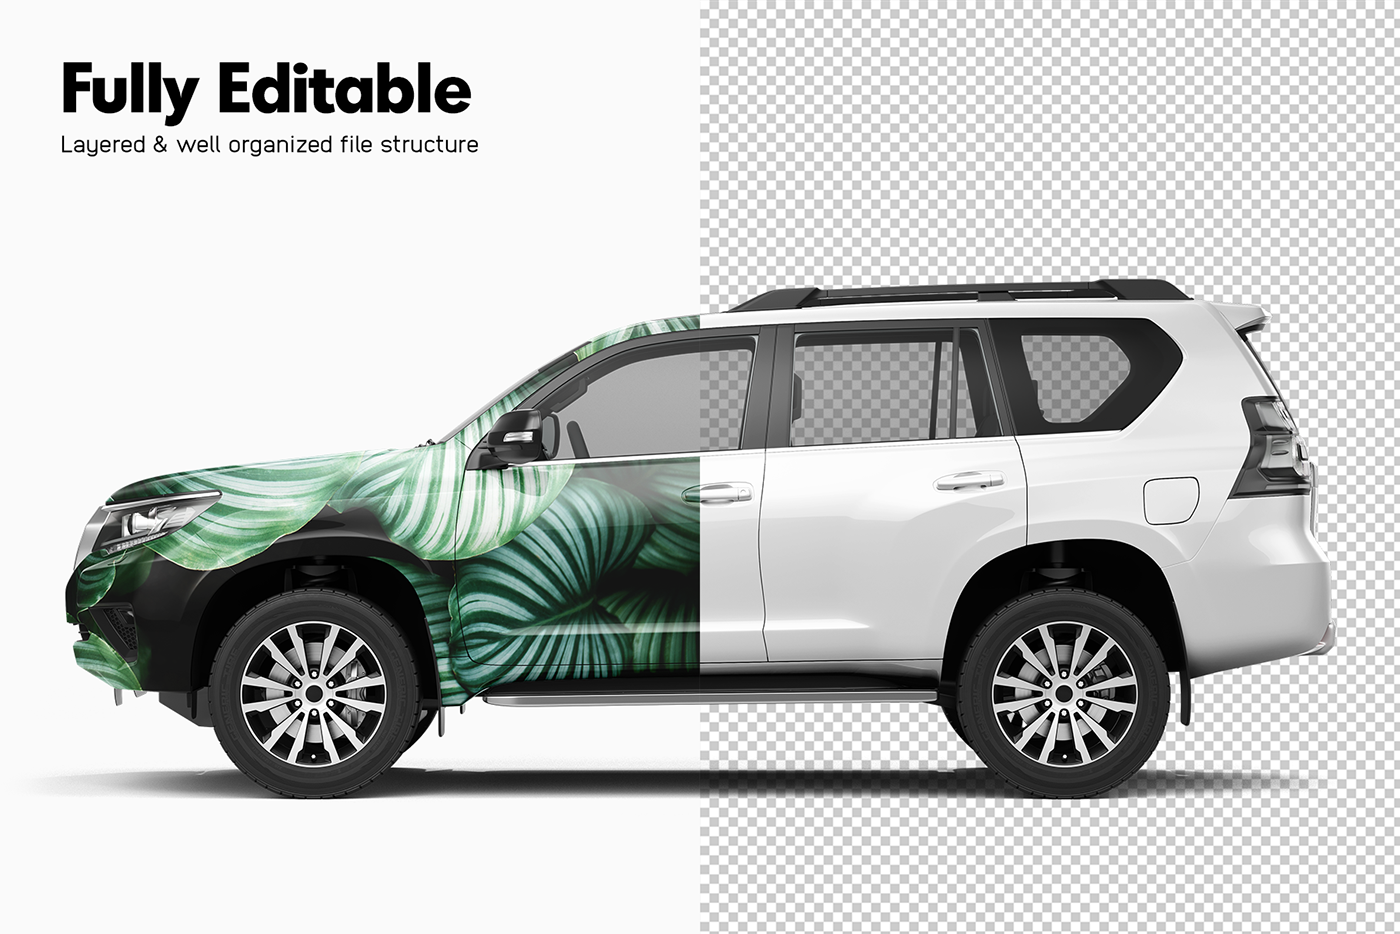 toyota photoshop mockup psd suv Land Cruiser tuning car wrap Vehicle Advertising  toyota mockup